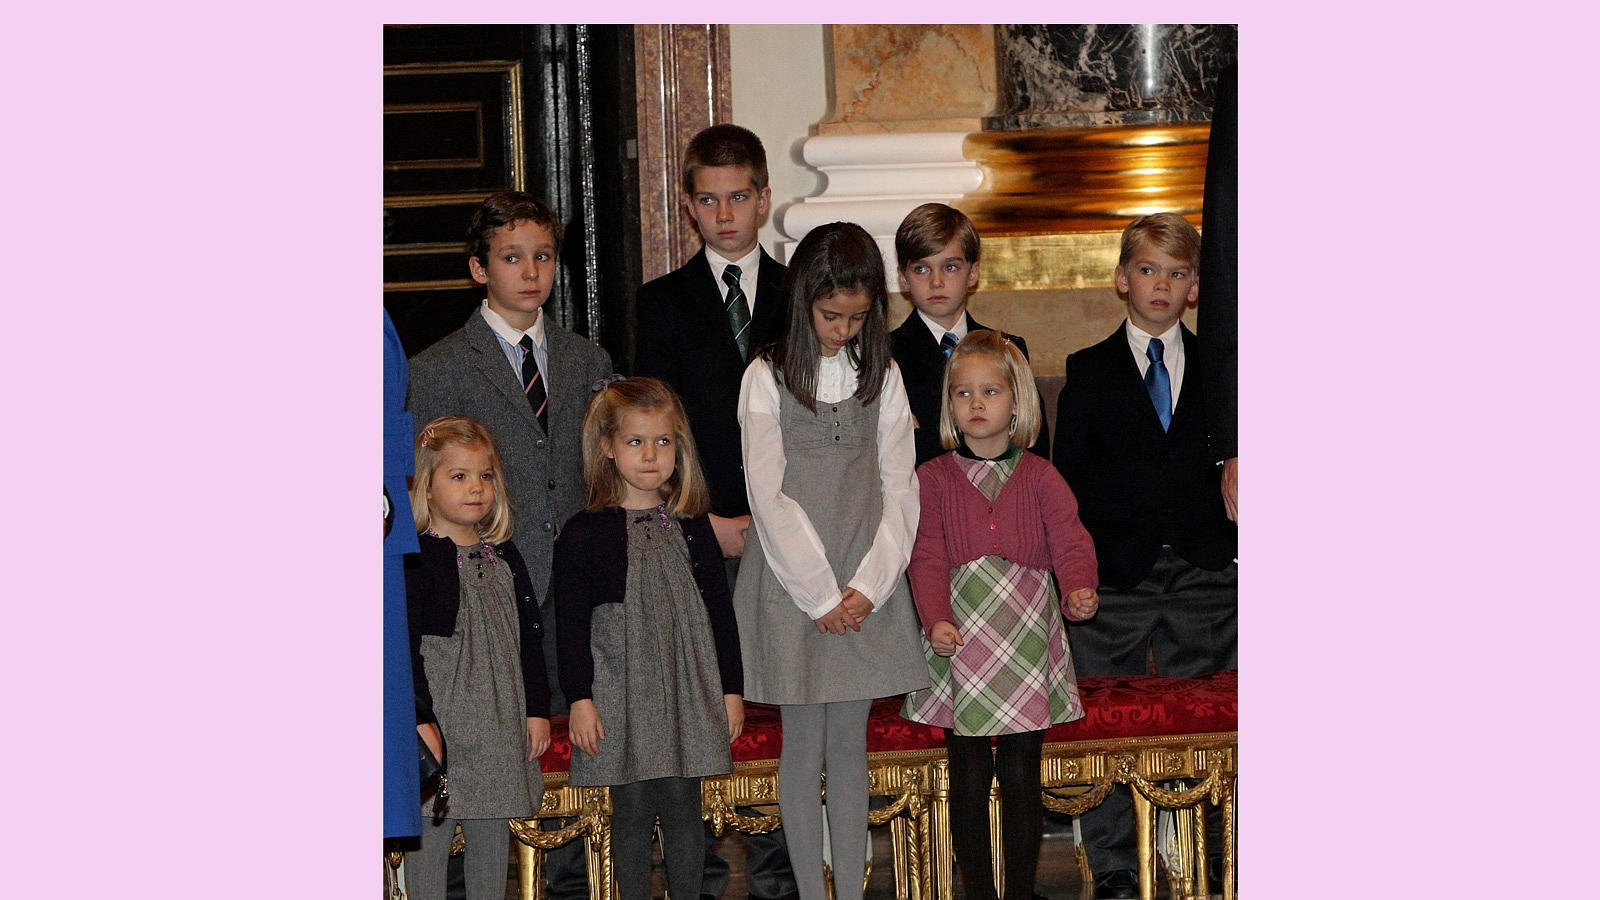 La Princesa muy formalita atiende, junto a sus primos a la ceremonia religiosa oficiada en la capilla del Palacio Real con motivo del centenario del nacimiento de su bisabuela Doña María de las Mercedes de Borbón y Orleans